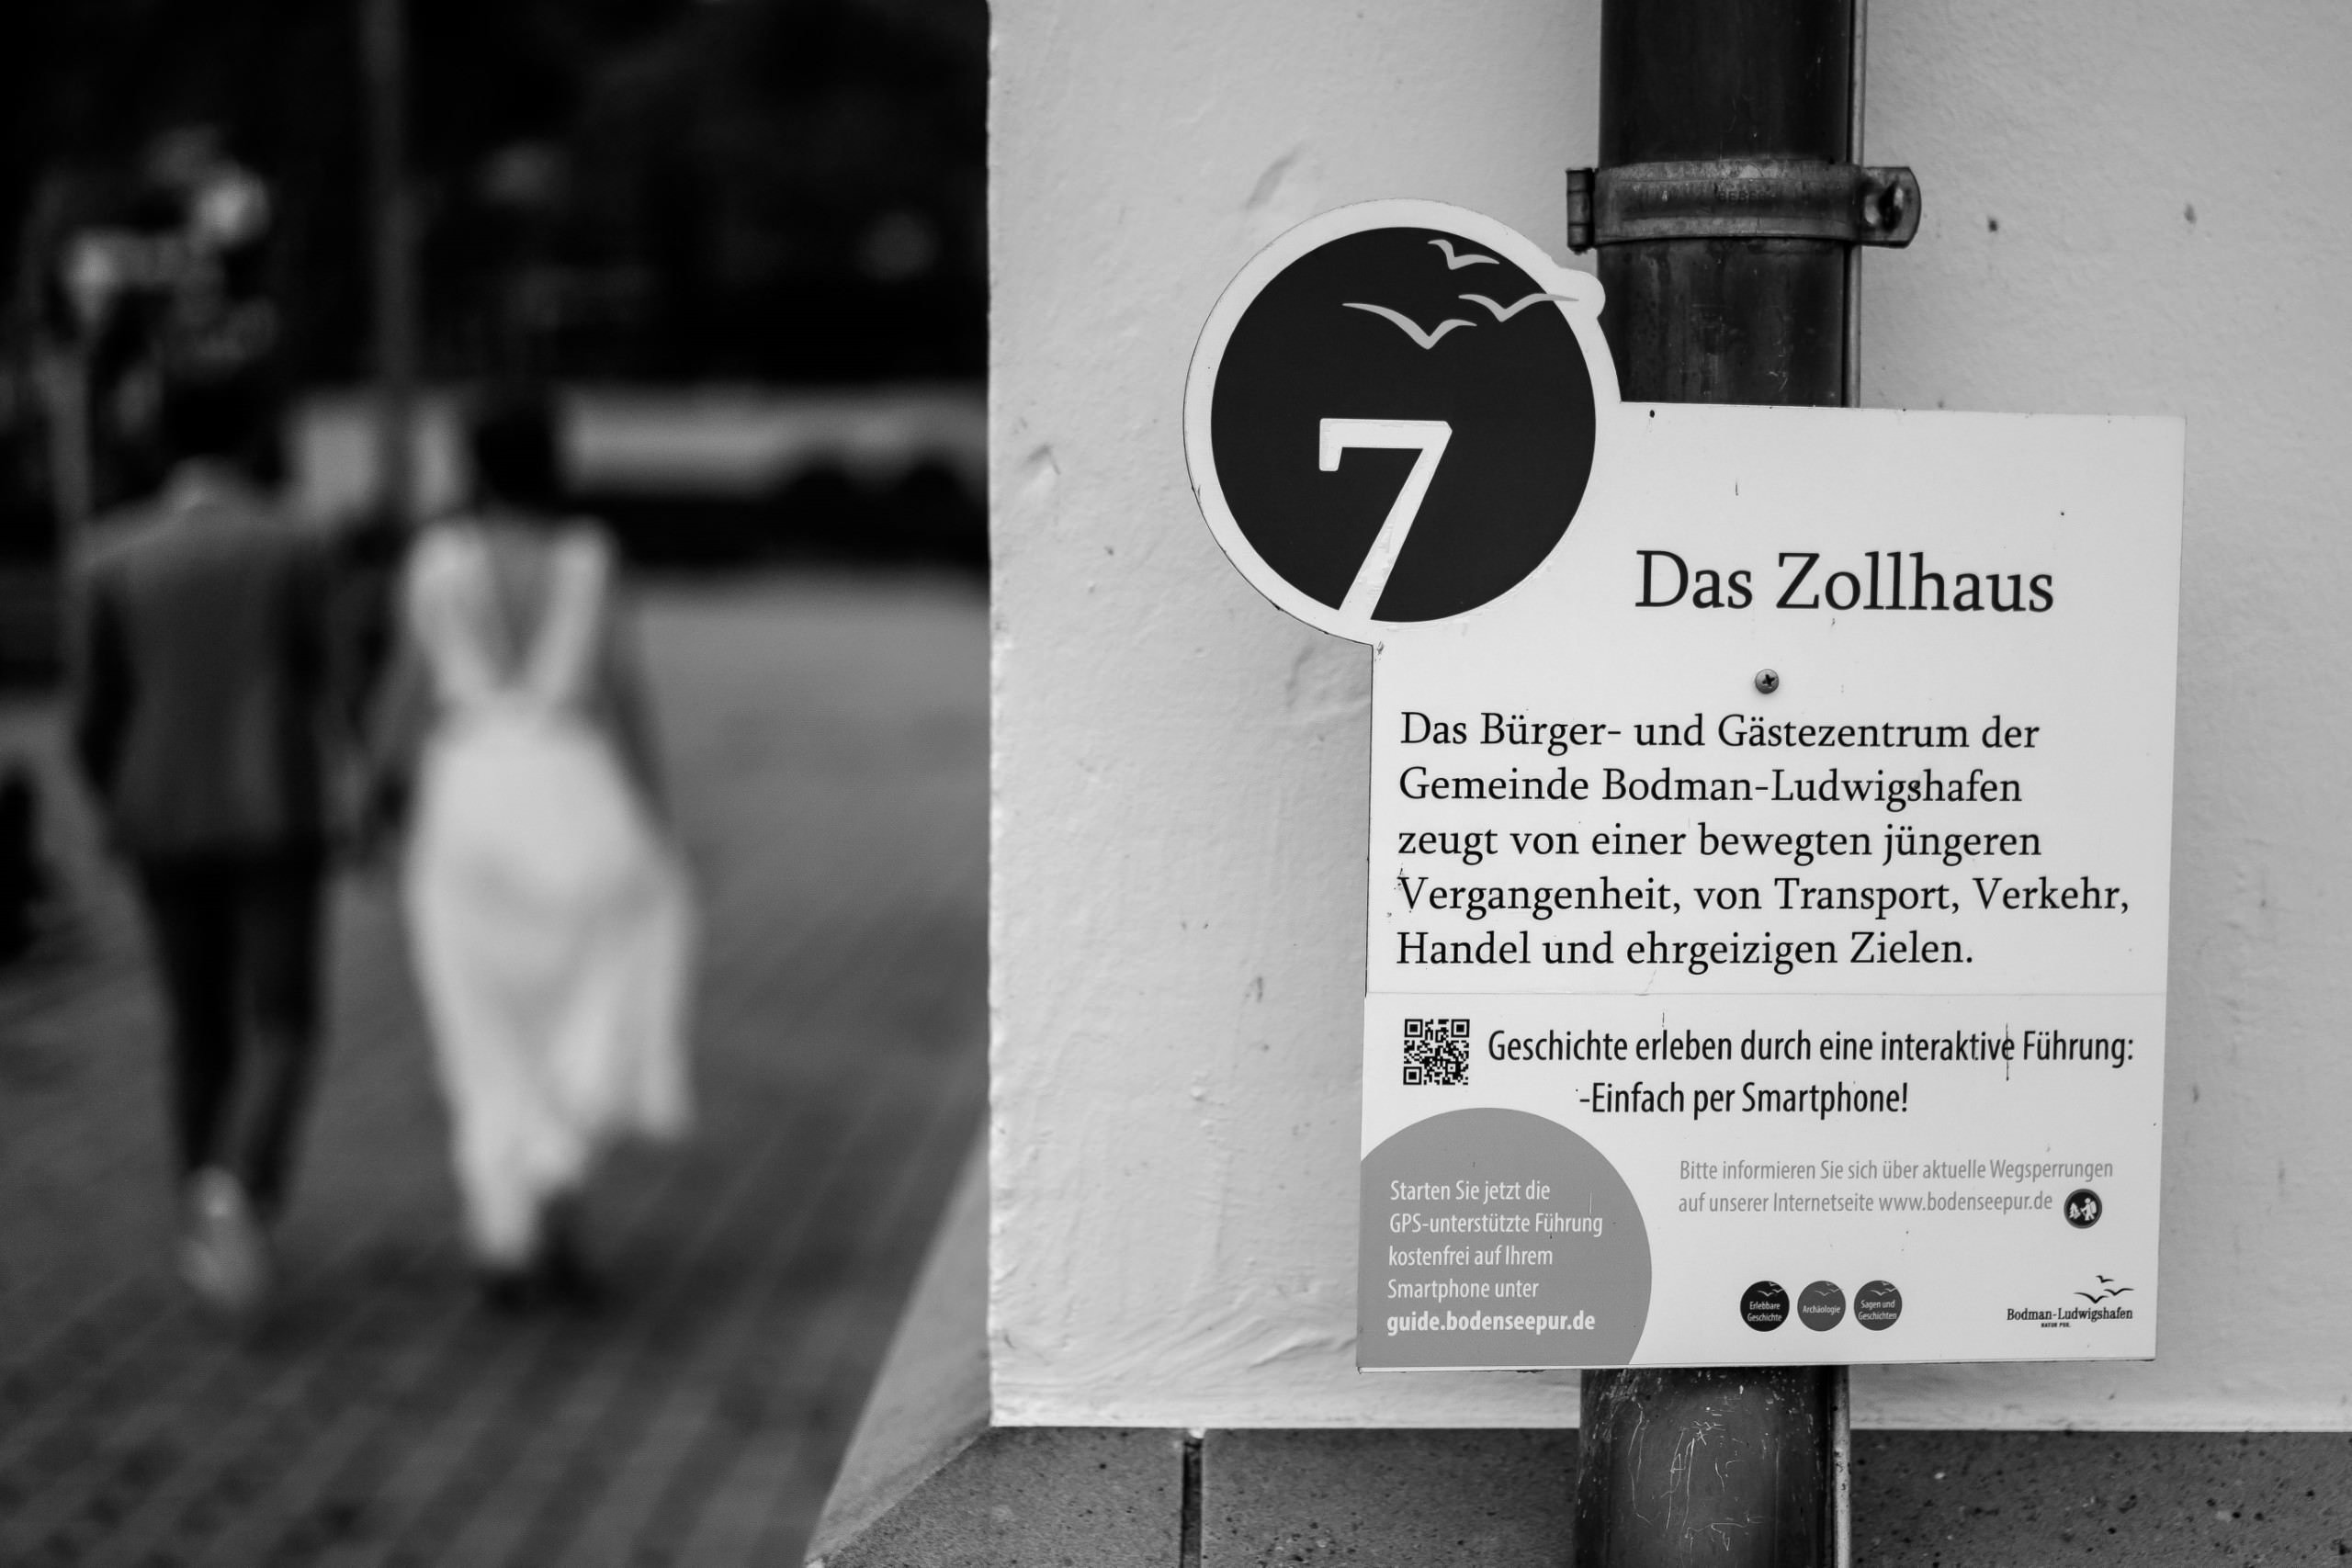 Aida + Tim | Hochzeitsfotografen am Bodensee Hochzeit - Zollhaus, Ludwigshafen 